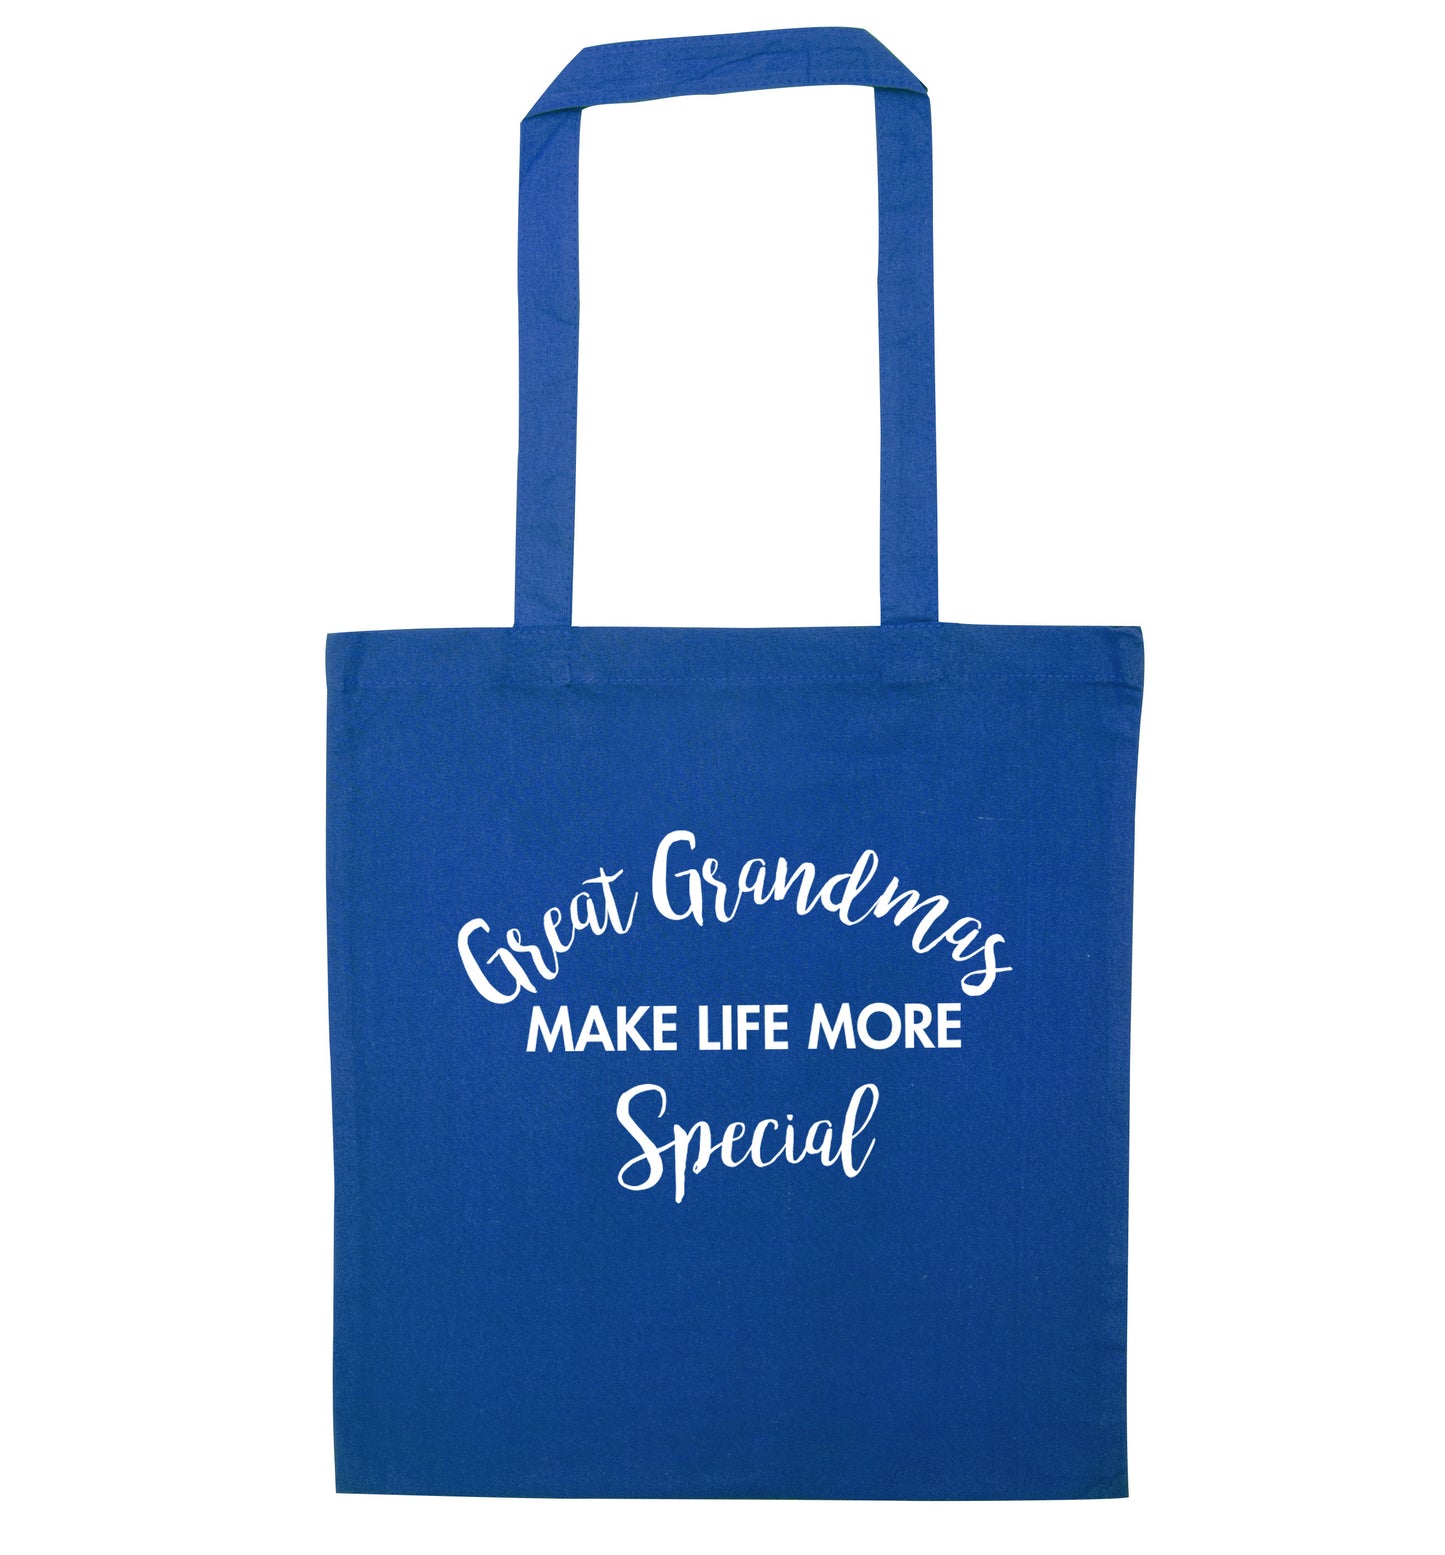 Great Grandmas make life more special blue tote bag